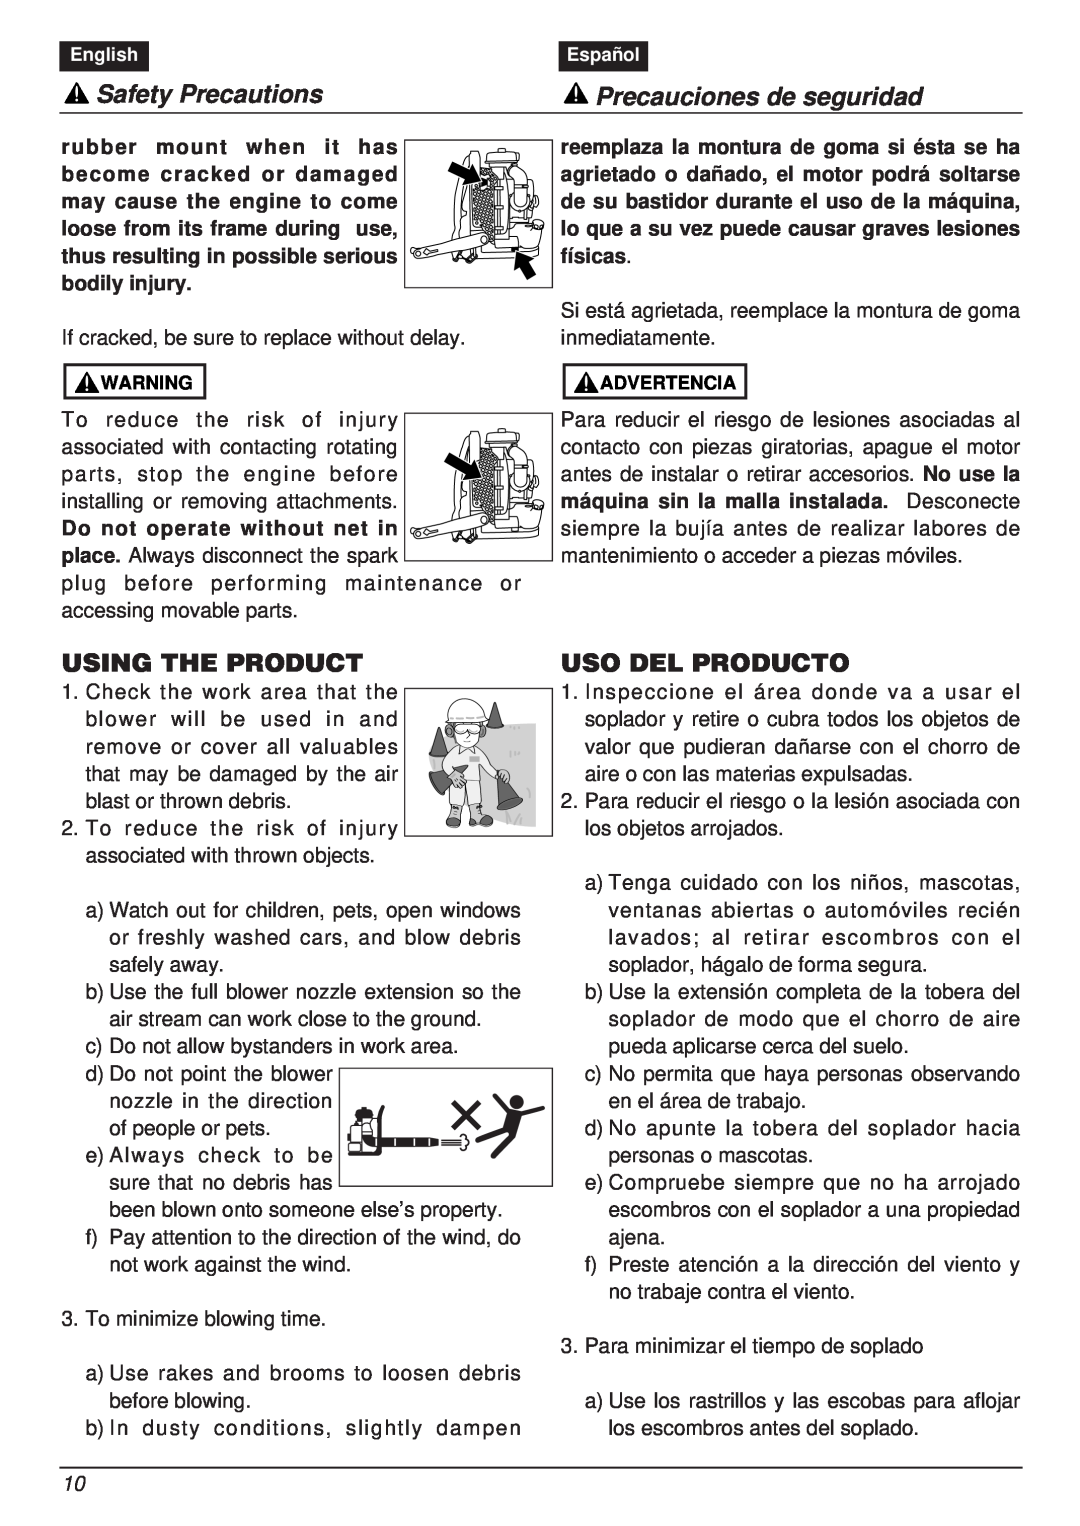 RedMax EBZ8000RH manual Using The Product, Uso Del Producto, Safety Precautions, Precauciones de seguridad 